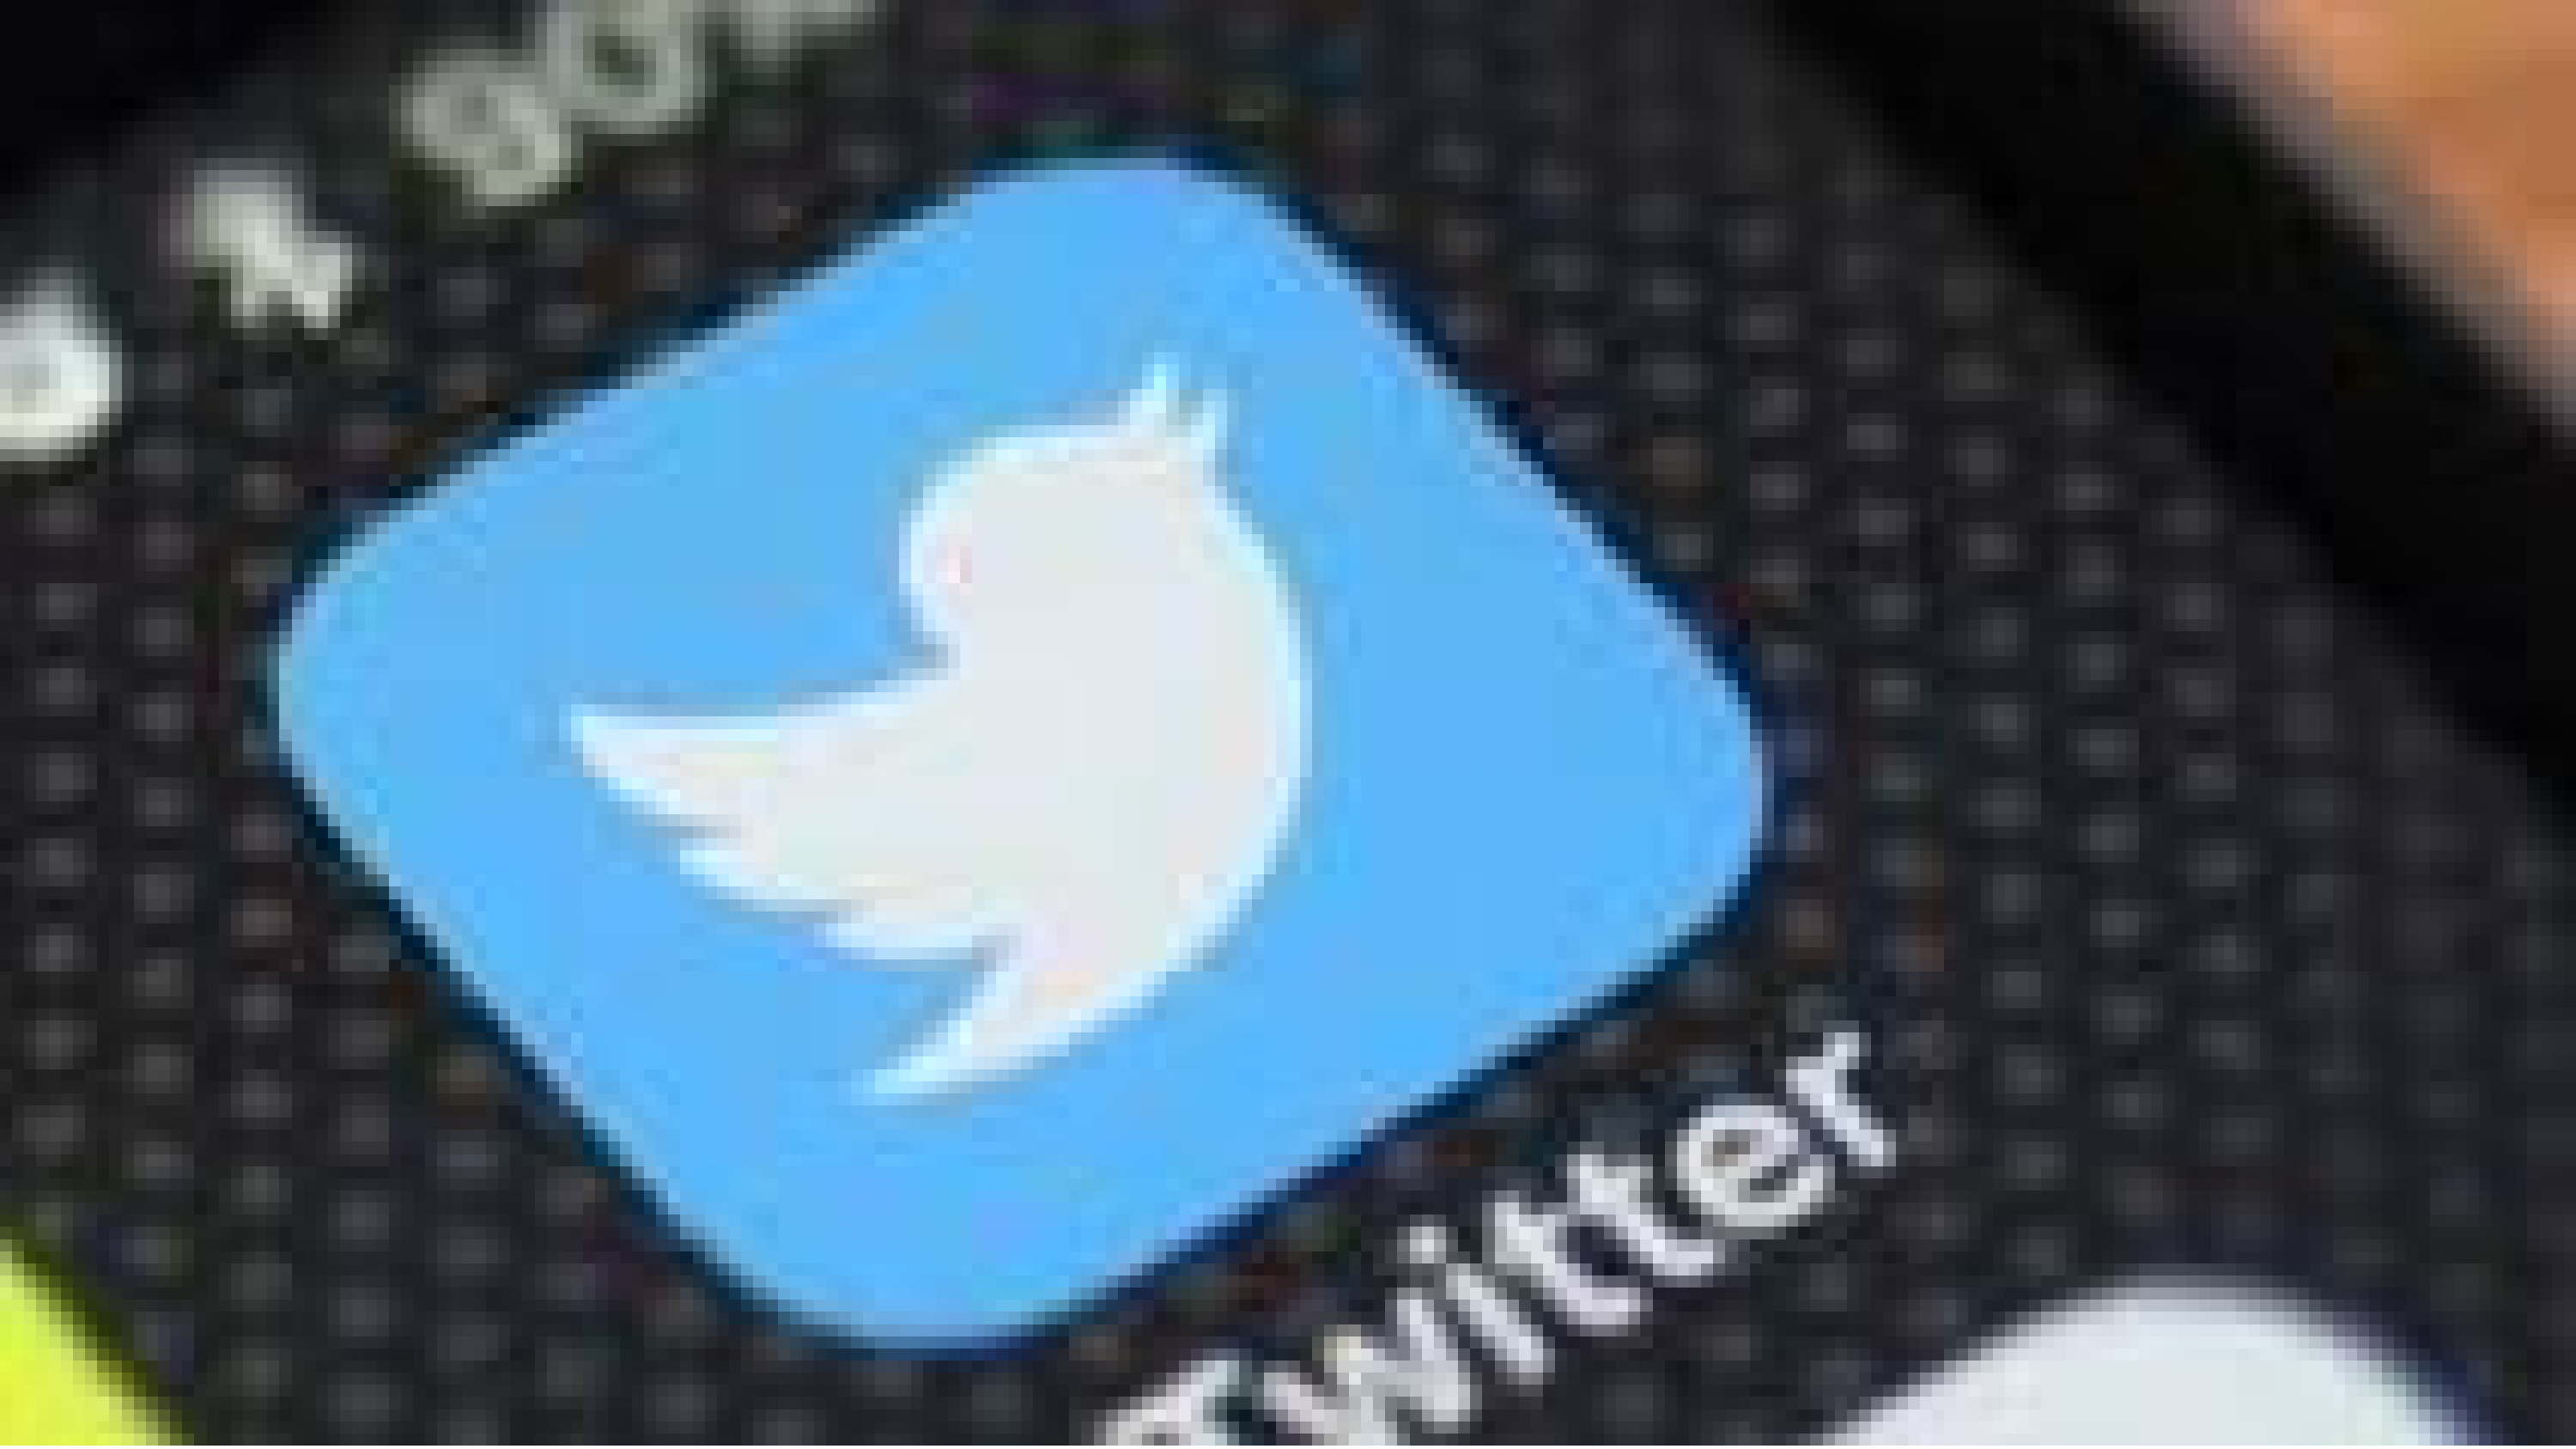 पुलिस के डराने-धमकाने की रणनीति से चिंतित, अभिव्यक्ति की आजादी को खतरा संभव: ट्विटर